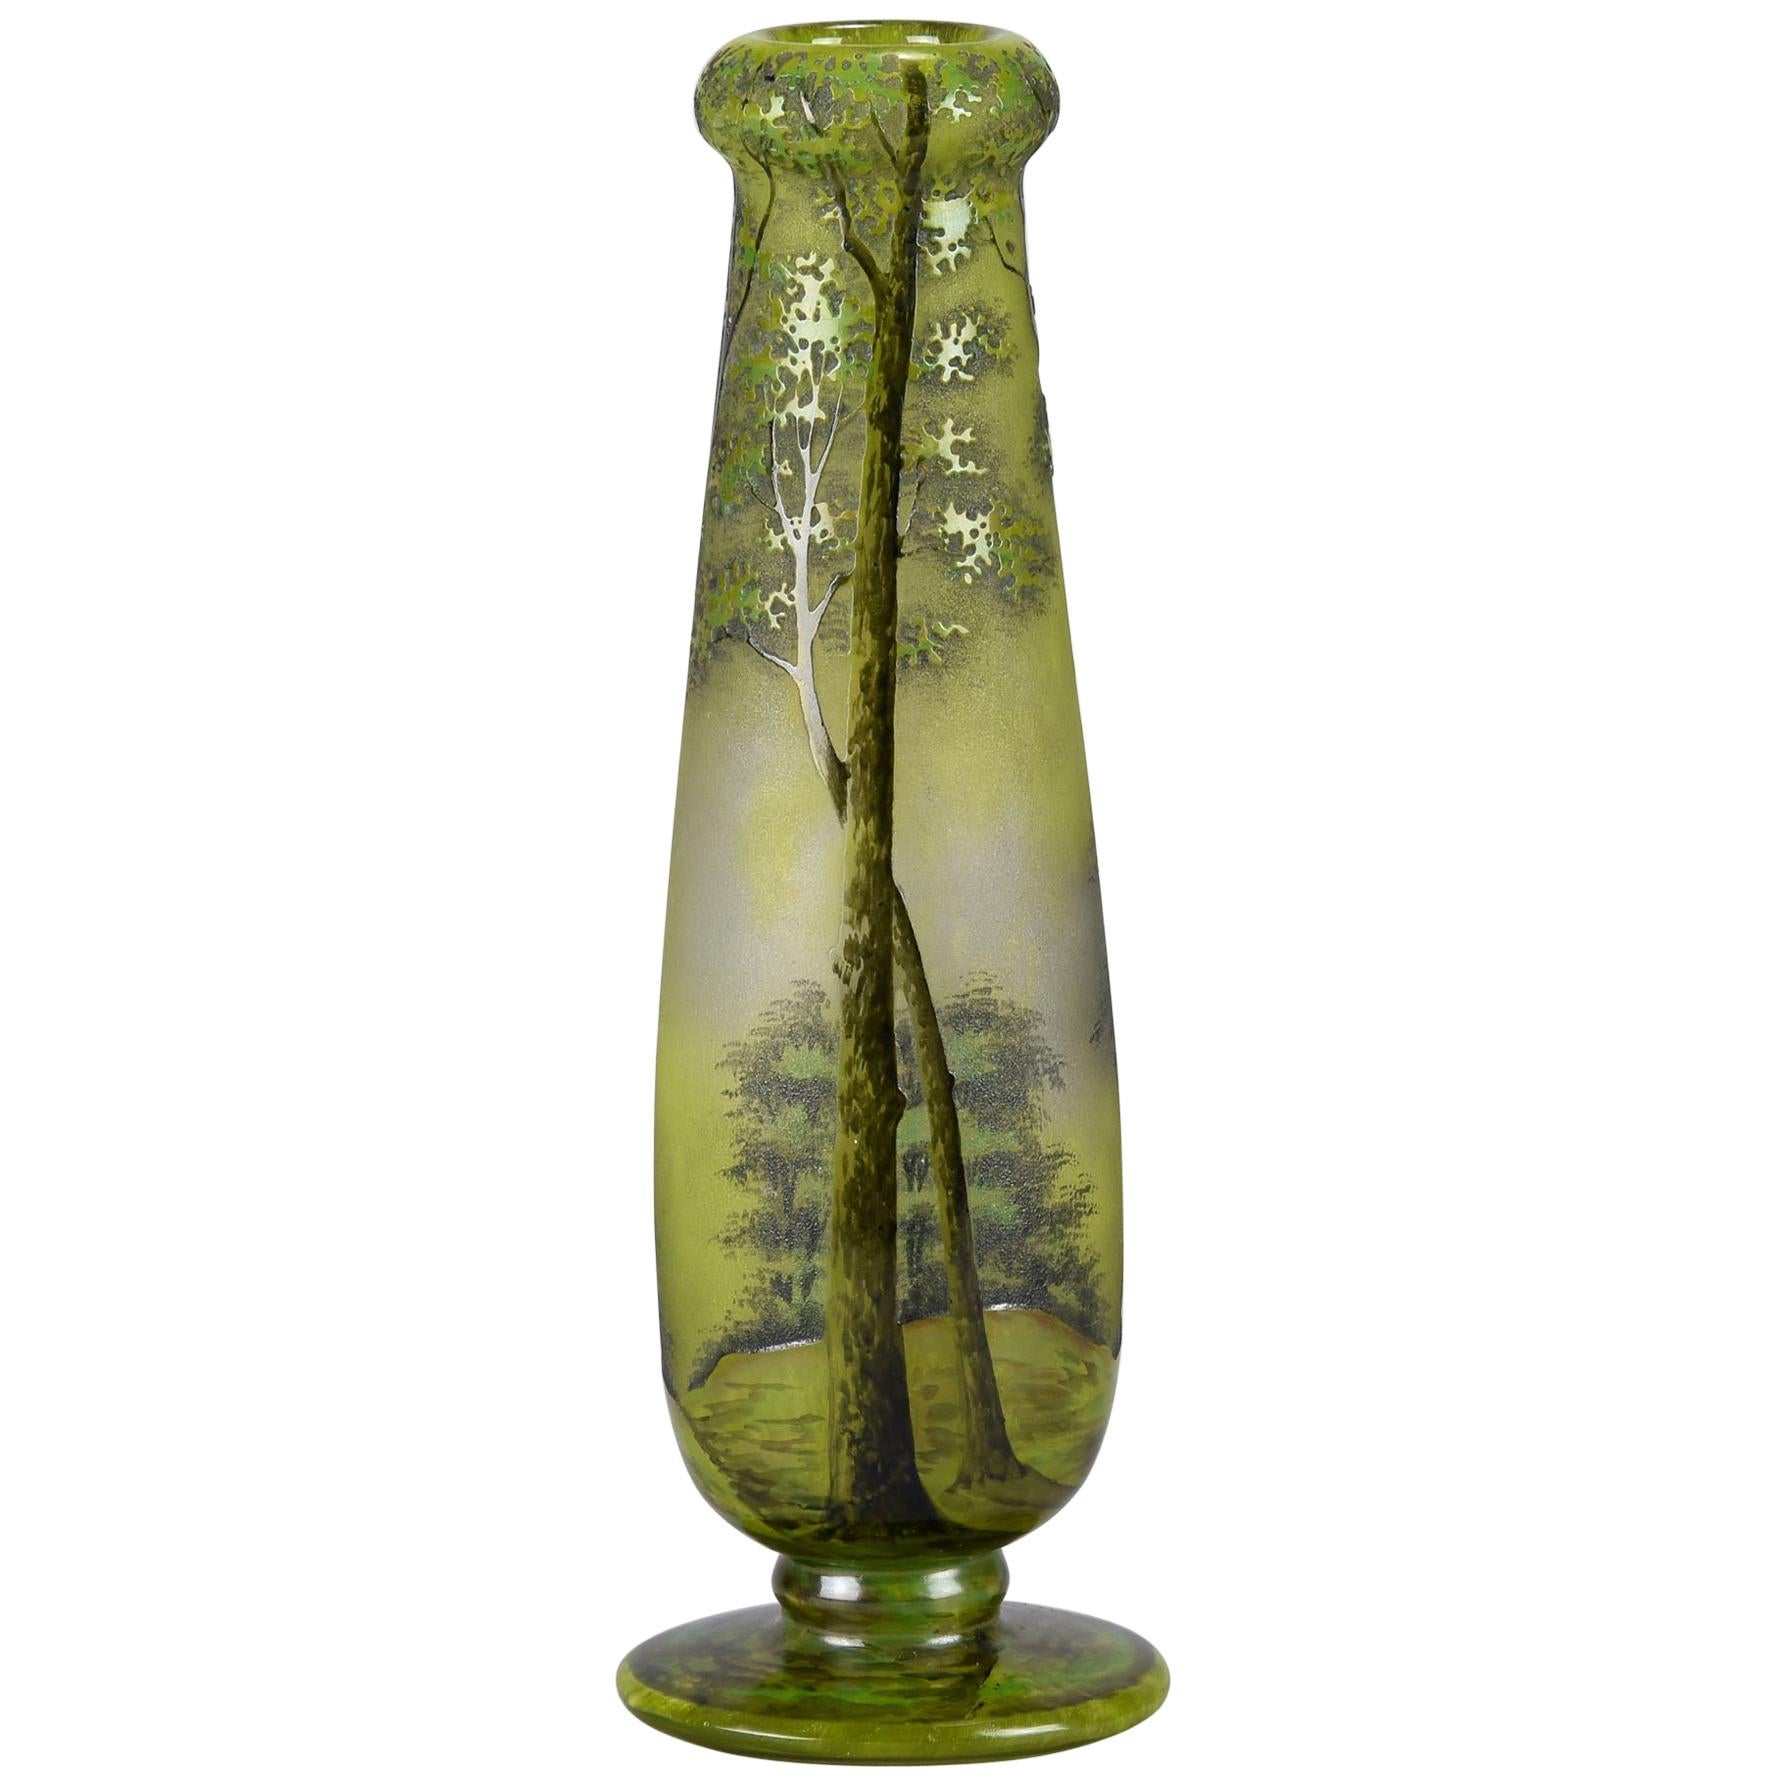 French Art Nouveau Cameo Glass Vase "Spring Landscape Vase" by Daum Frères